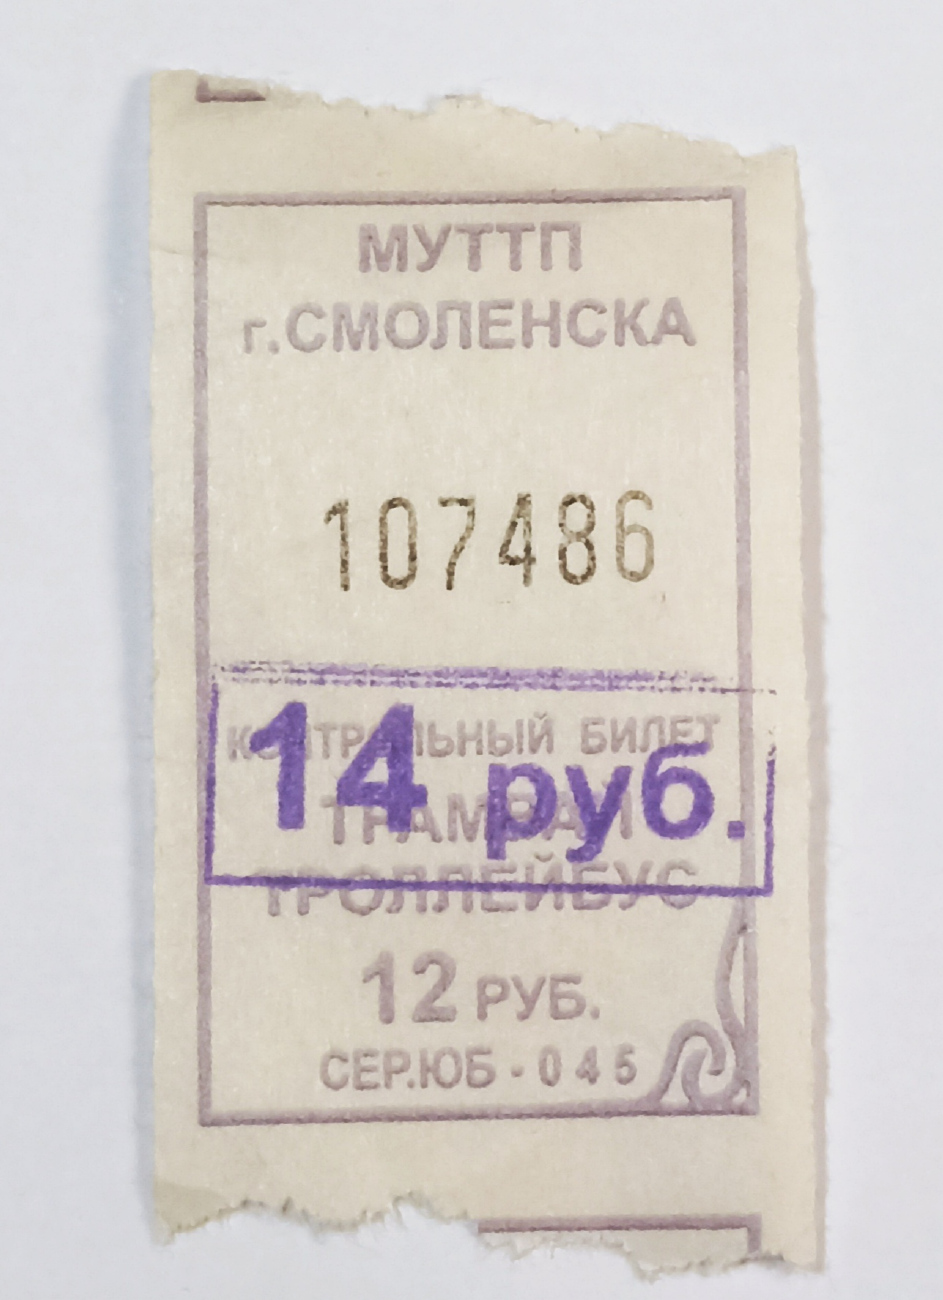 Smolenskas — Tickets